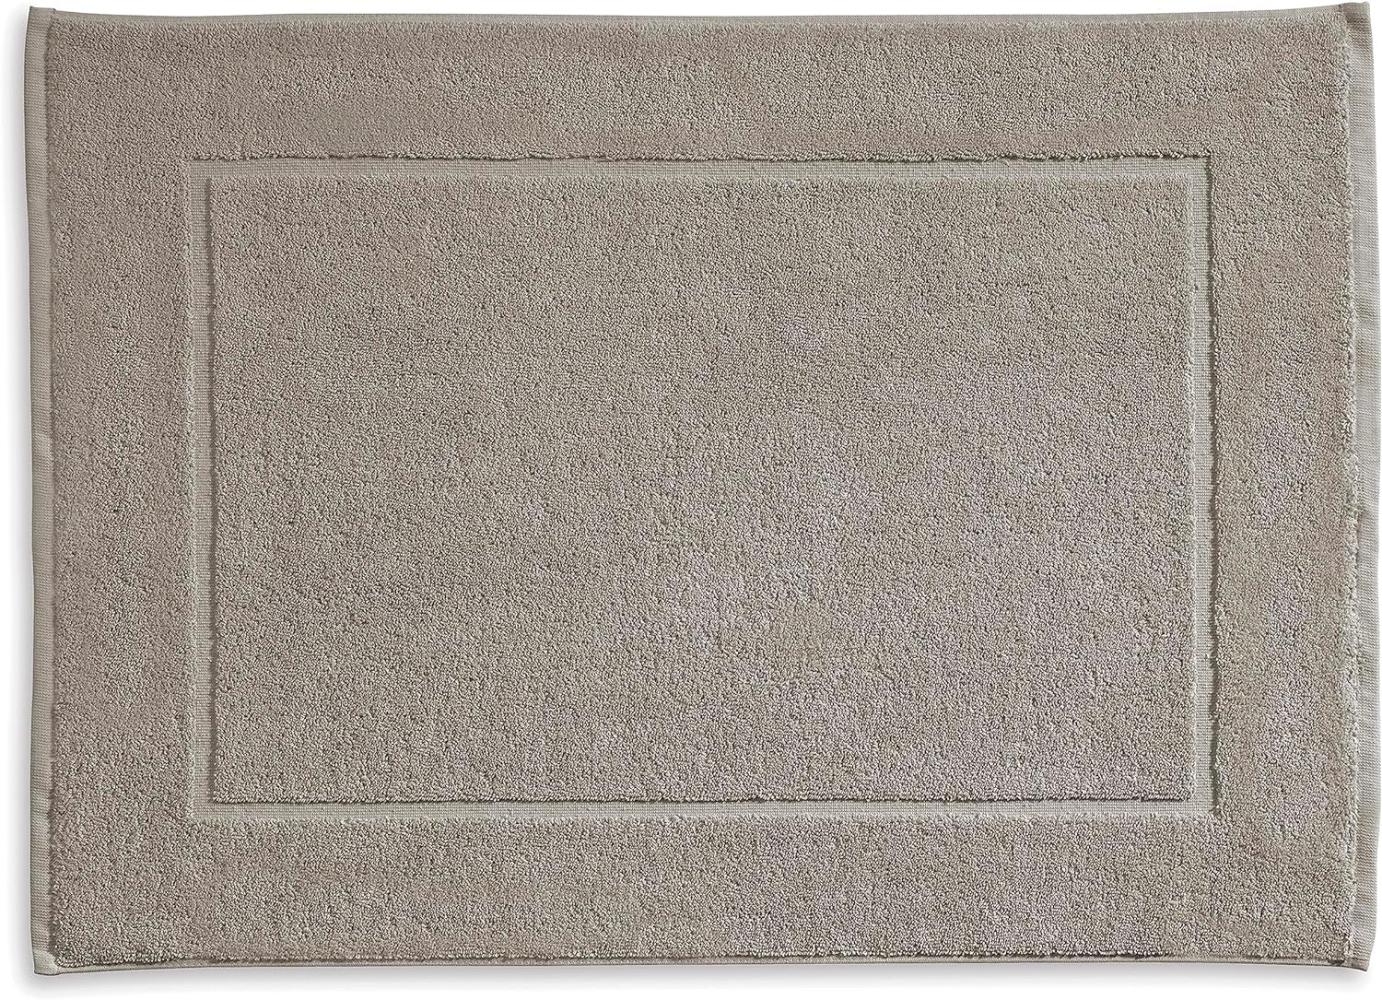 Kela Badvorleger Ladessa, 60 cm x 100 cm, 100% Baumwolle, Silbergrau, waschbar bei 60° C, für Fußbodenheizung geeignet, 23486 Bild 1